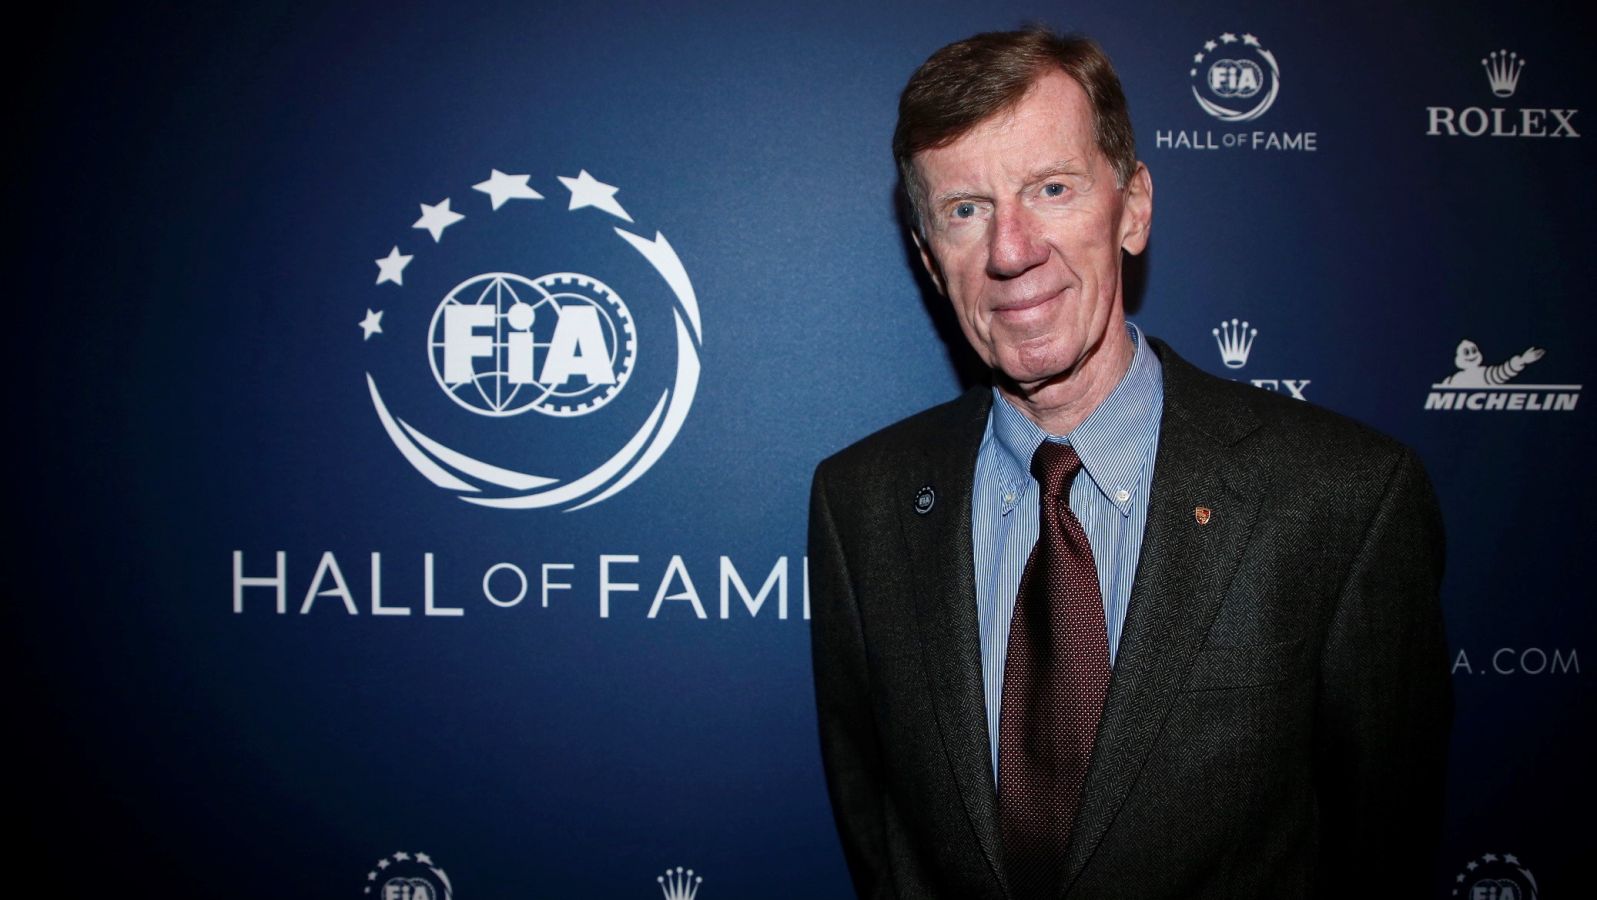 Als erster Rallye-Pilot und Nicht-Formel 1-Weltmeister wurde Walter Röhrl am 30. Januar 2019 in die FIA Hall of Fame,
die Ruhmeshalle des internationalen Motorsports, aufgenommen. 